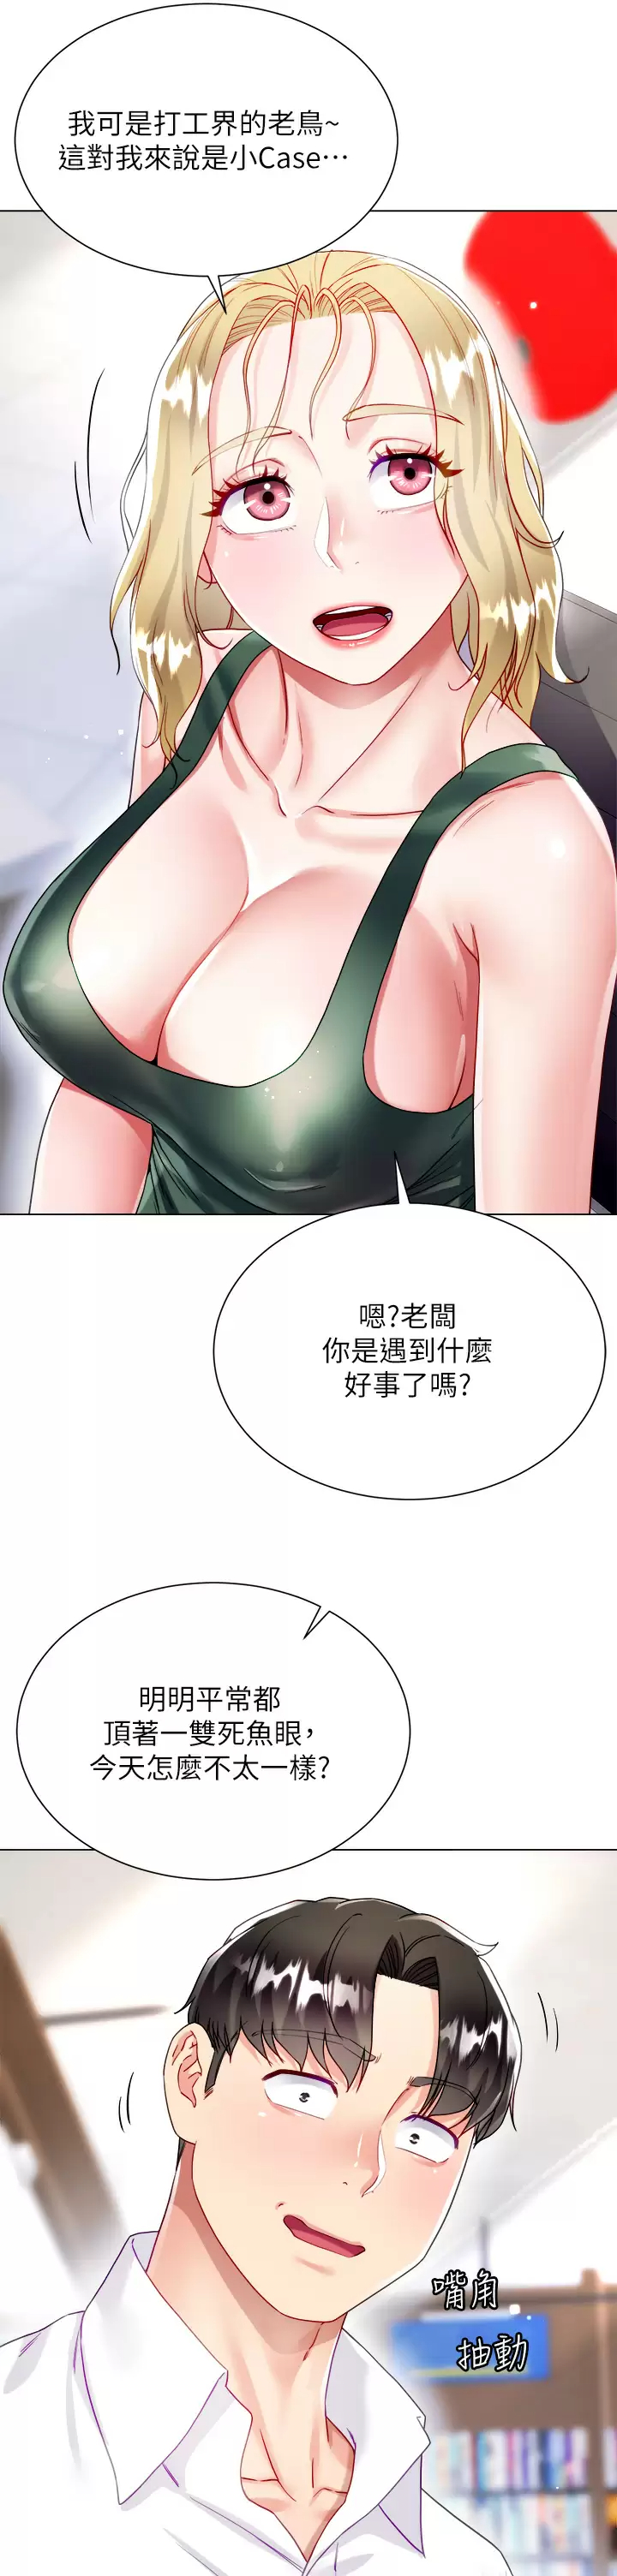 韩国污漫画 大嫂的裙子 第16话 摩擦阴蒂的感觉真好~! 38